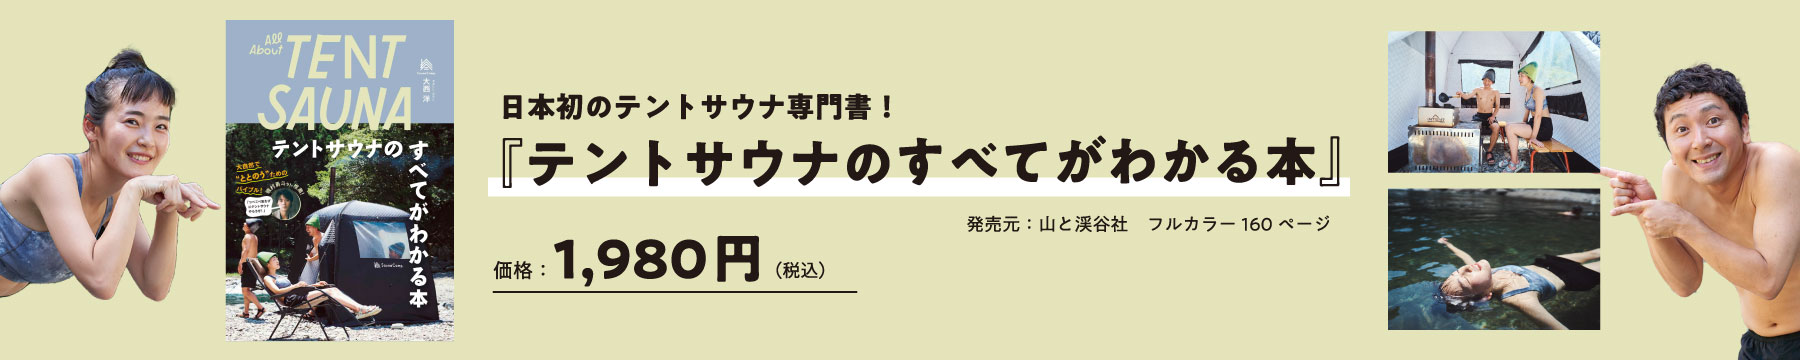 書籍『テントサウナのすべてがわかる本』山と渓谷社より発売！ by SaunaCamp.